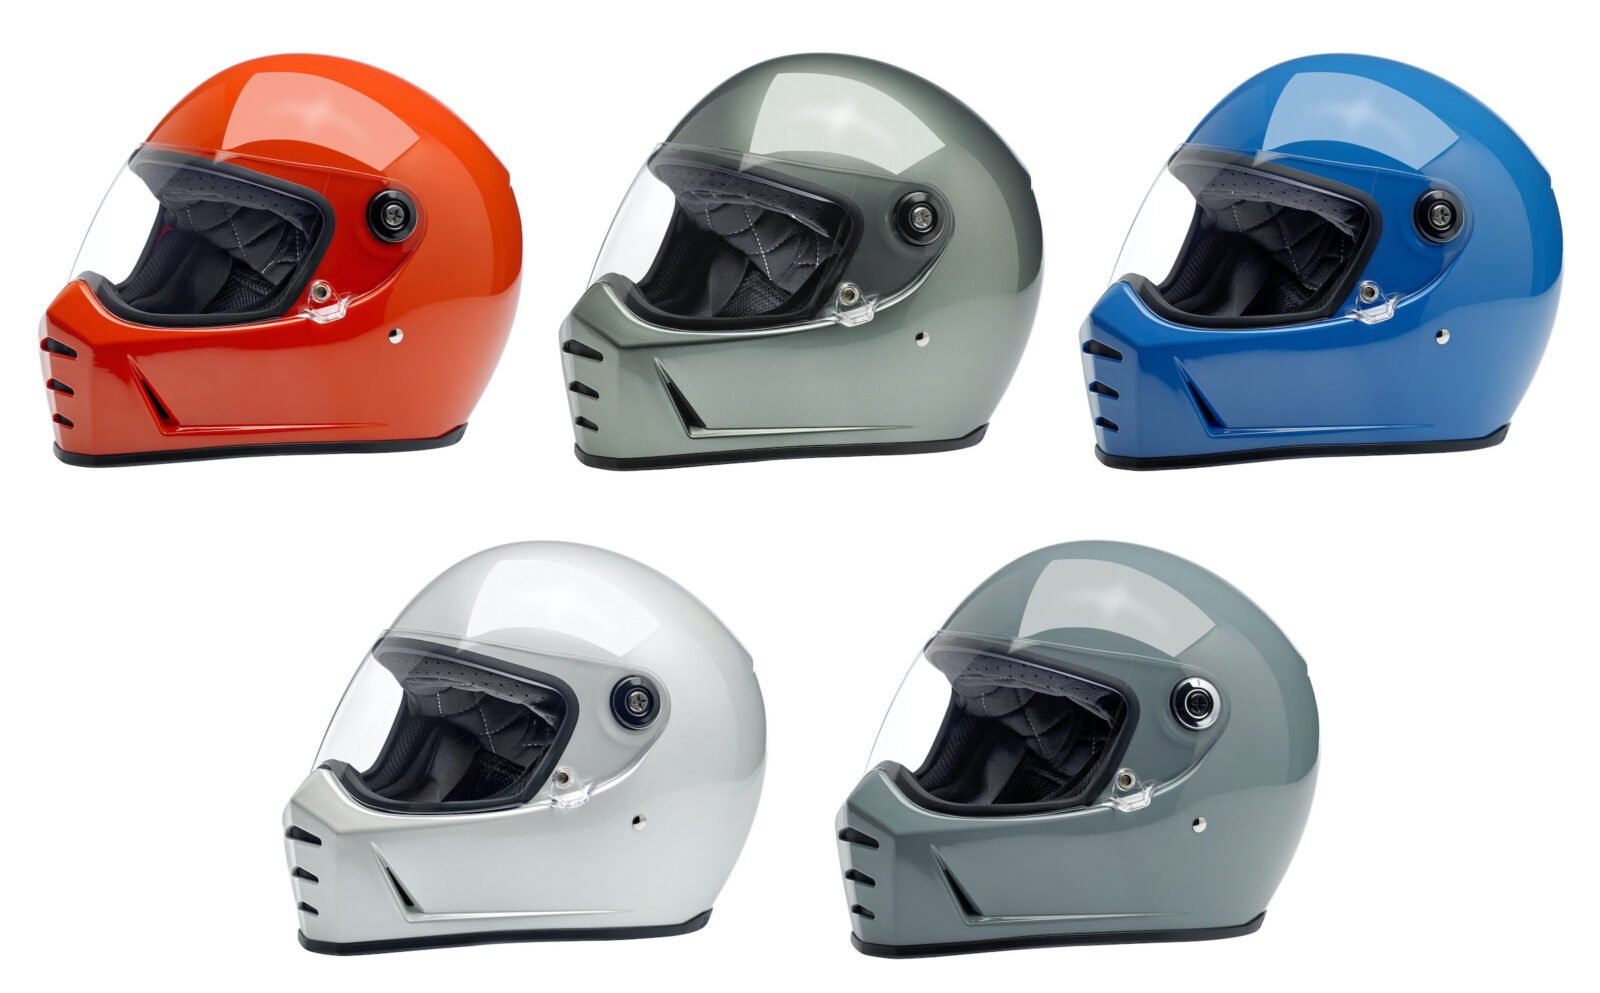 2020 Biltwell Lane Splitter Helmets